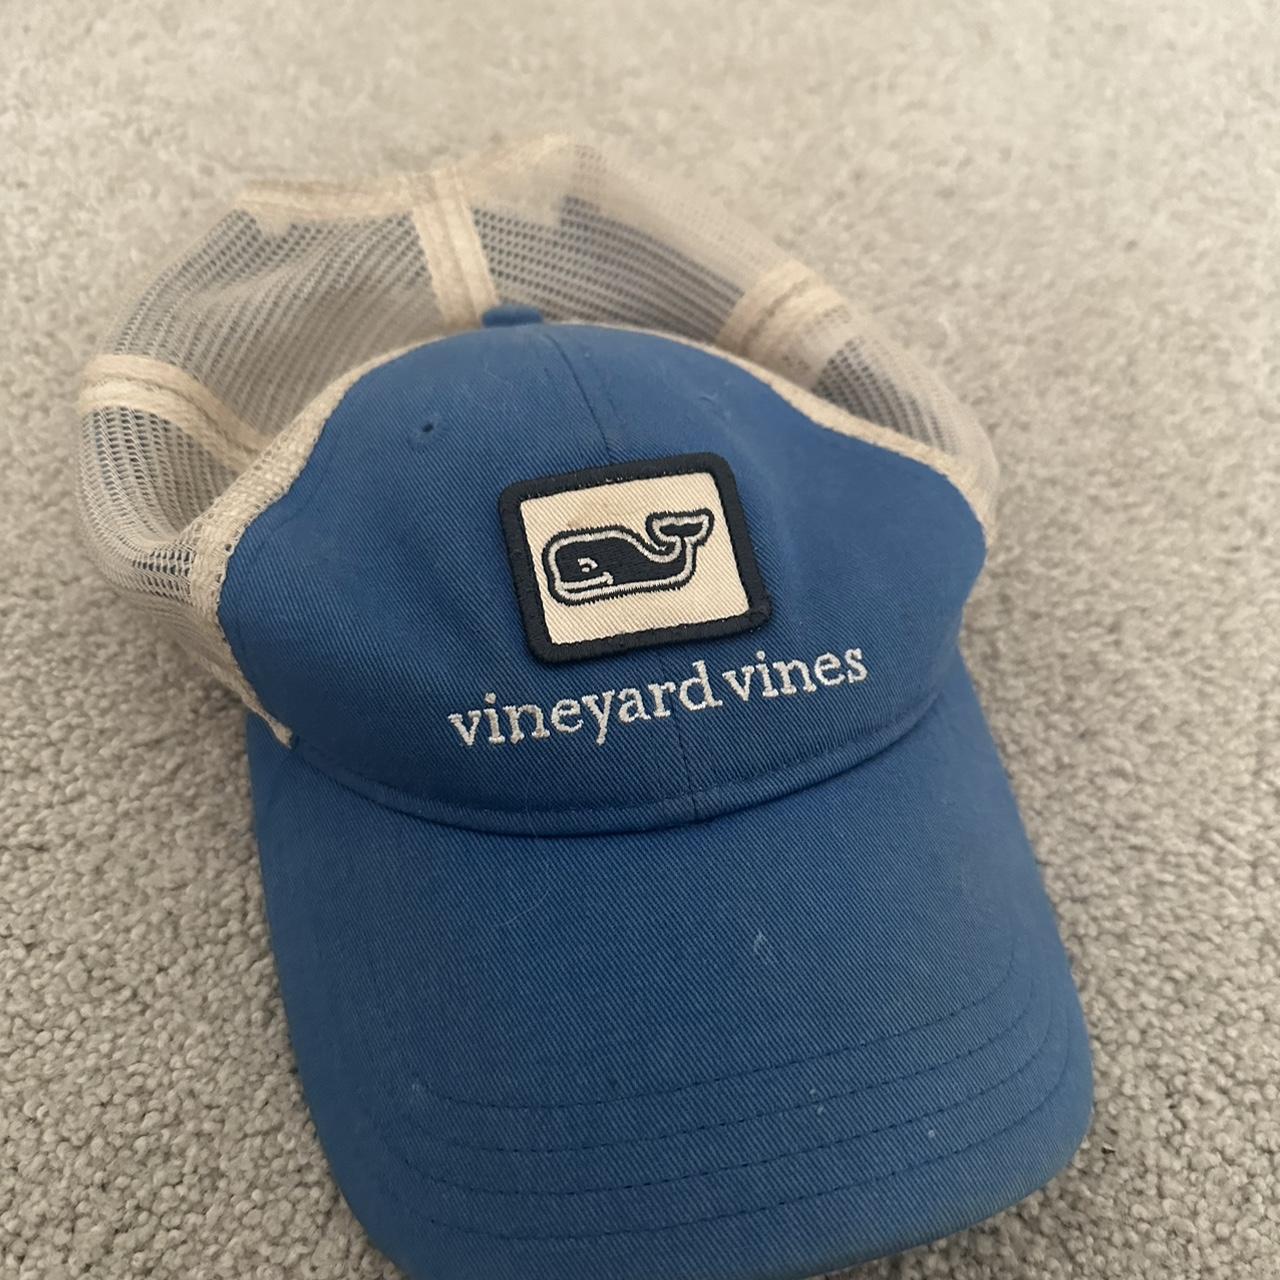 vineyard vines blue hat , #vinyardvines #hat #cap